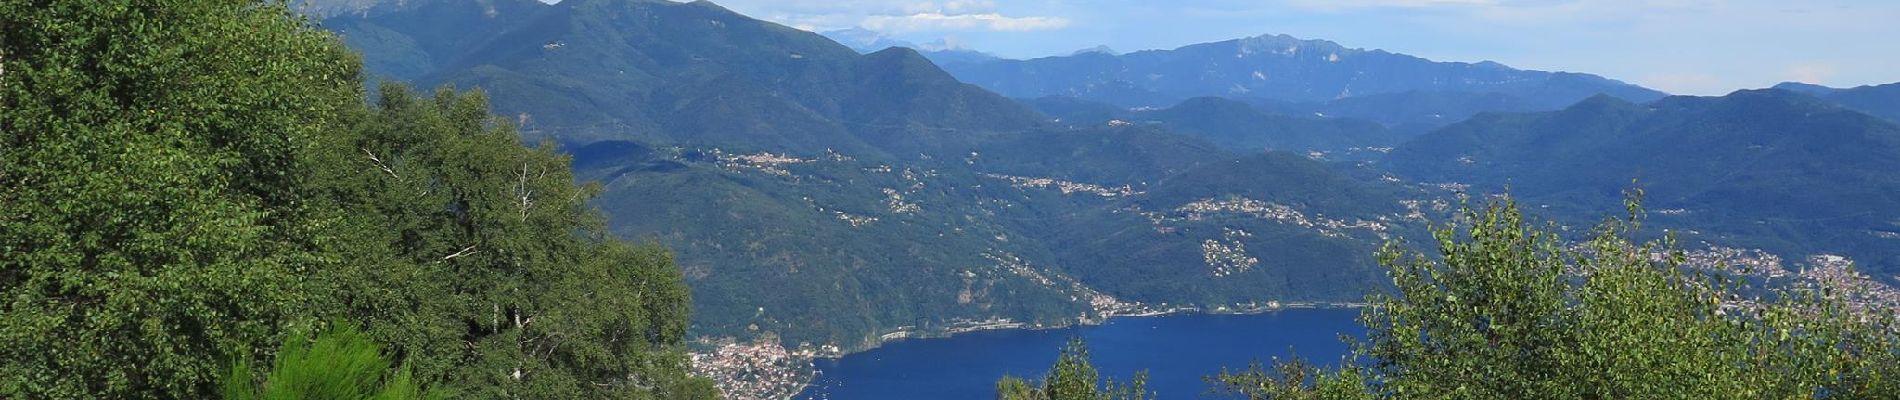 Randonnée Course à pied Trarego Viggiona - Monte Carza - Photo